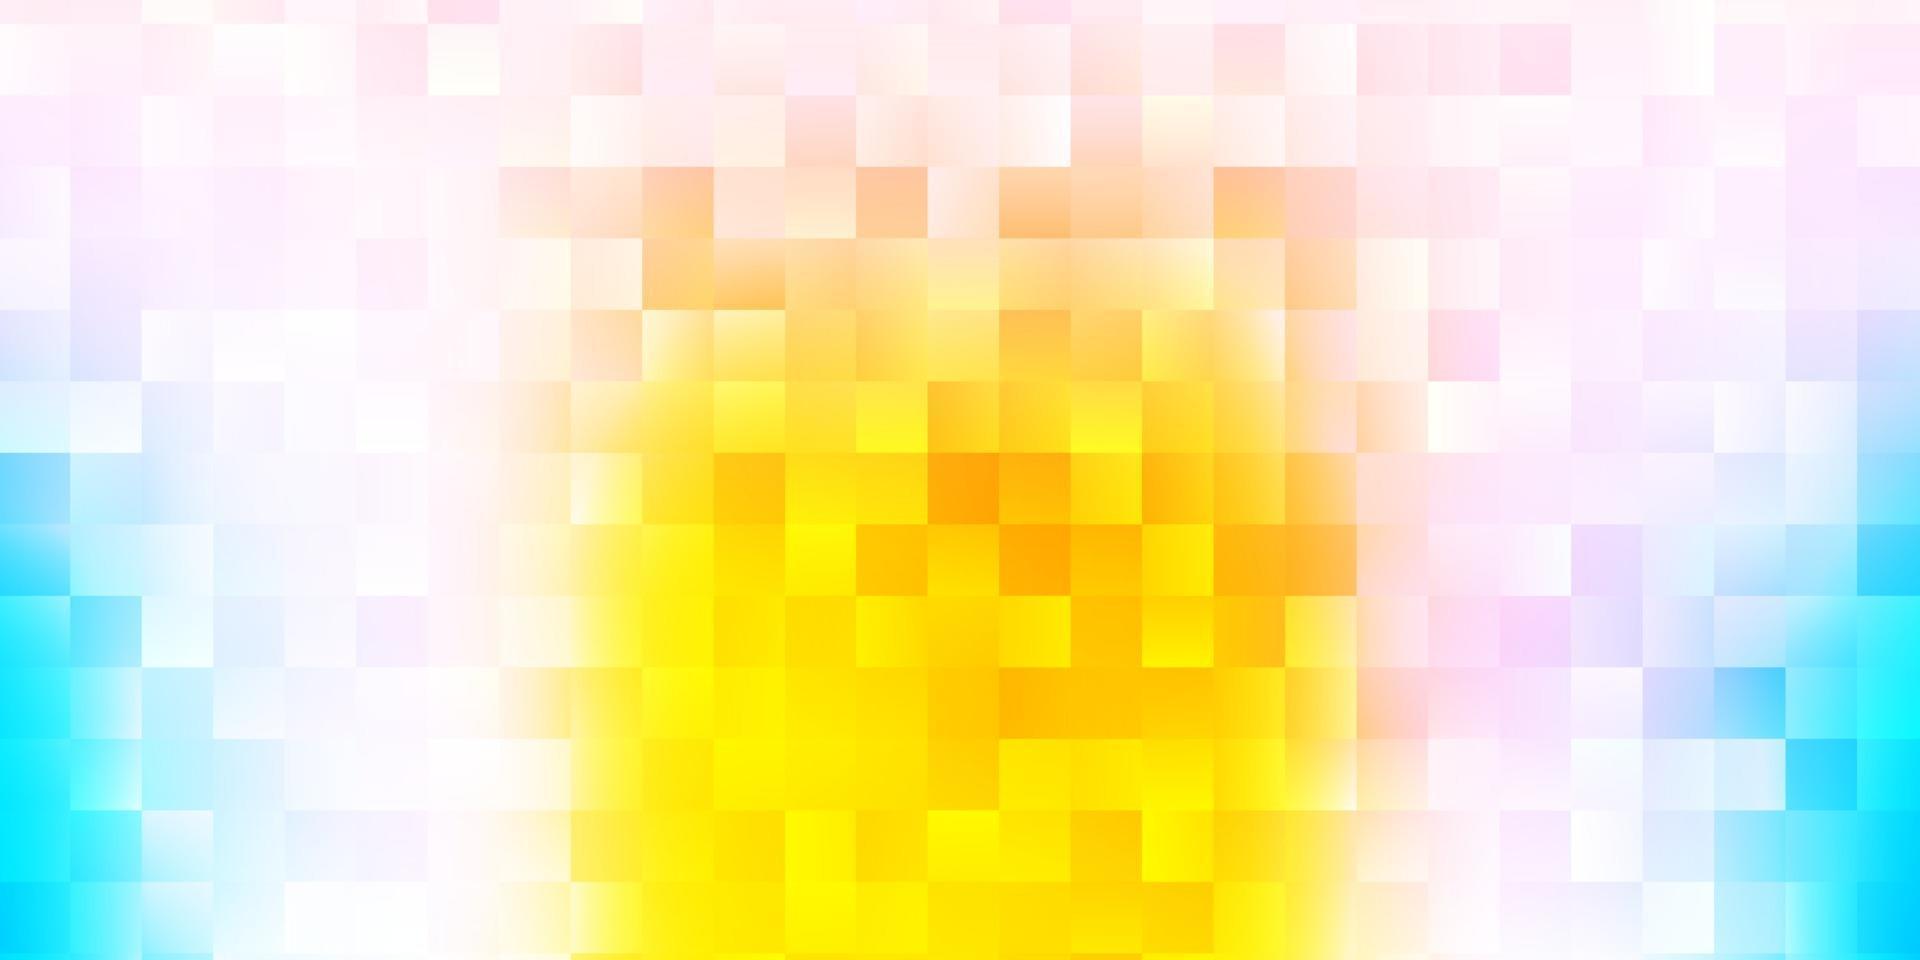 ljusblått, gult vektormönster med abstrakta former. vektor